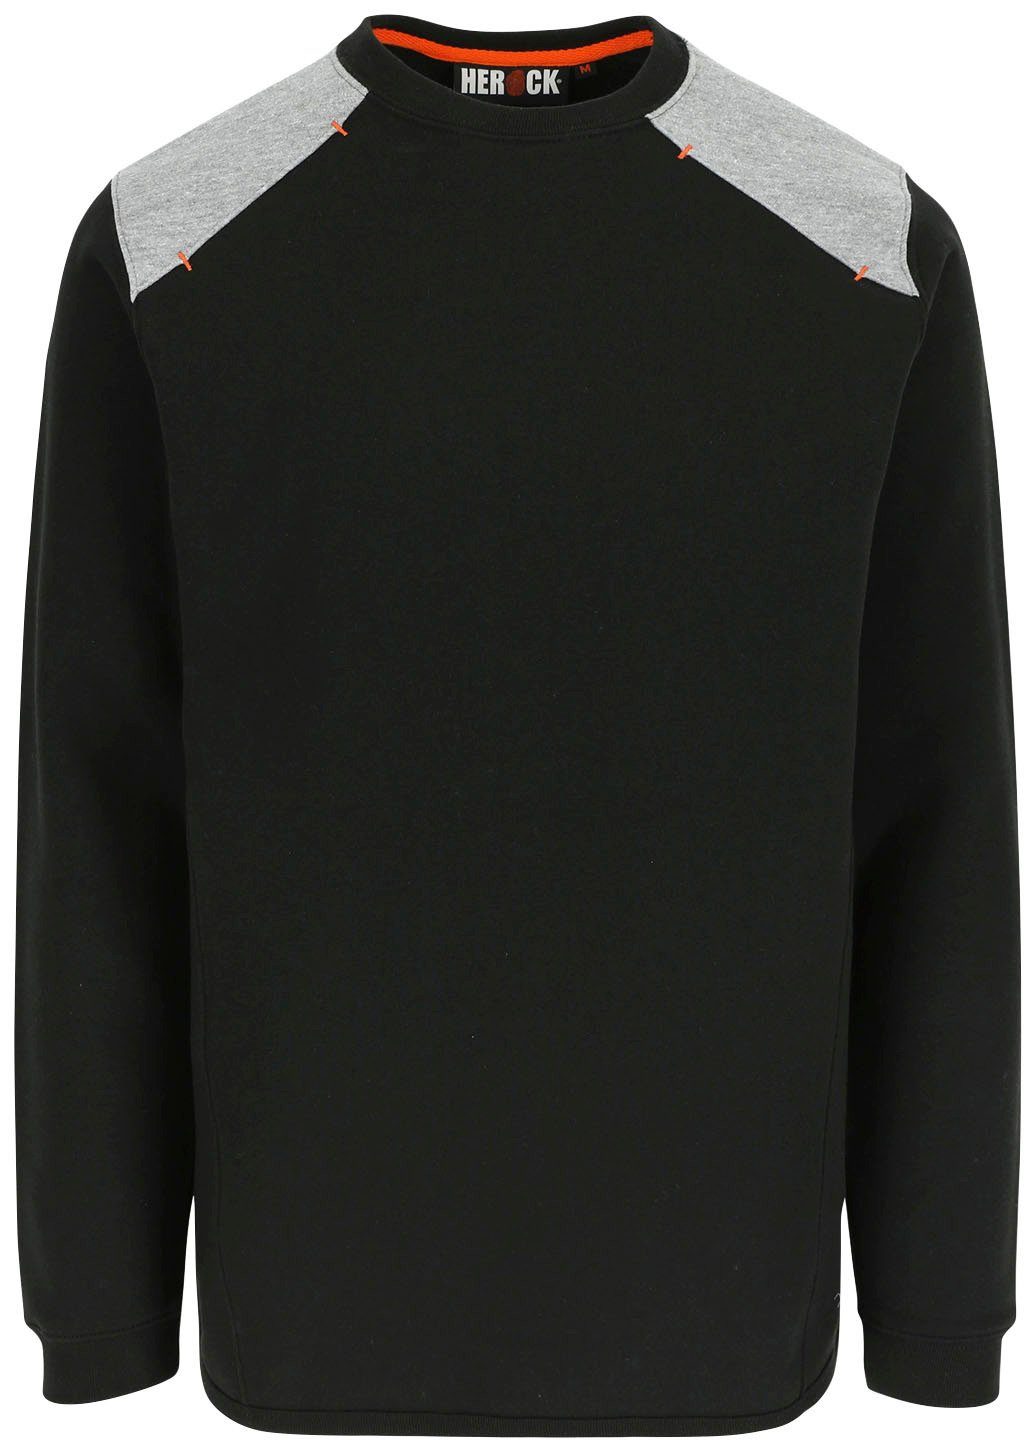 Langes Sweater weiches Rückenteil Artemis Herock Rundhalspullover Tragegefühl - Rippstrick Kragen schwarz -